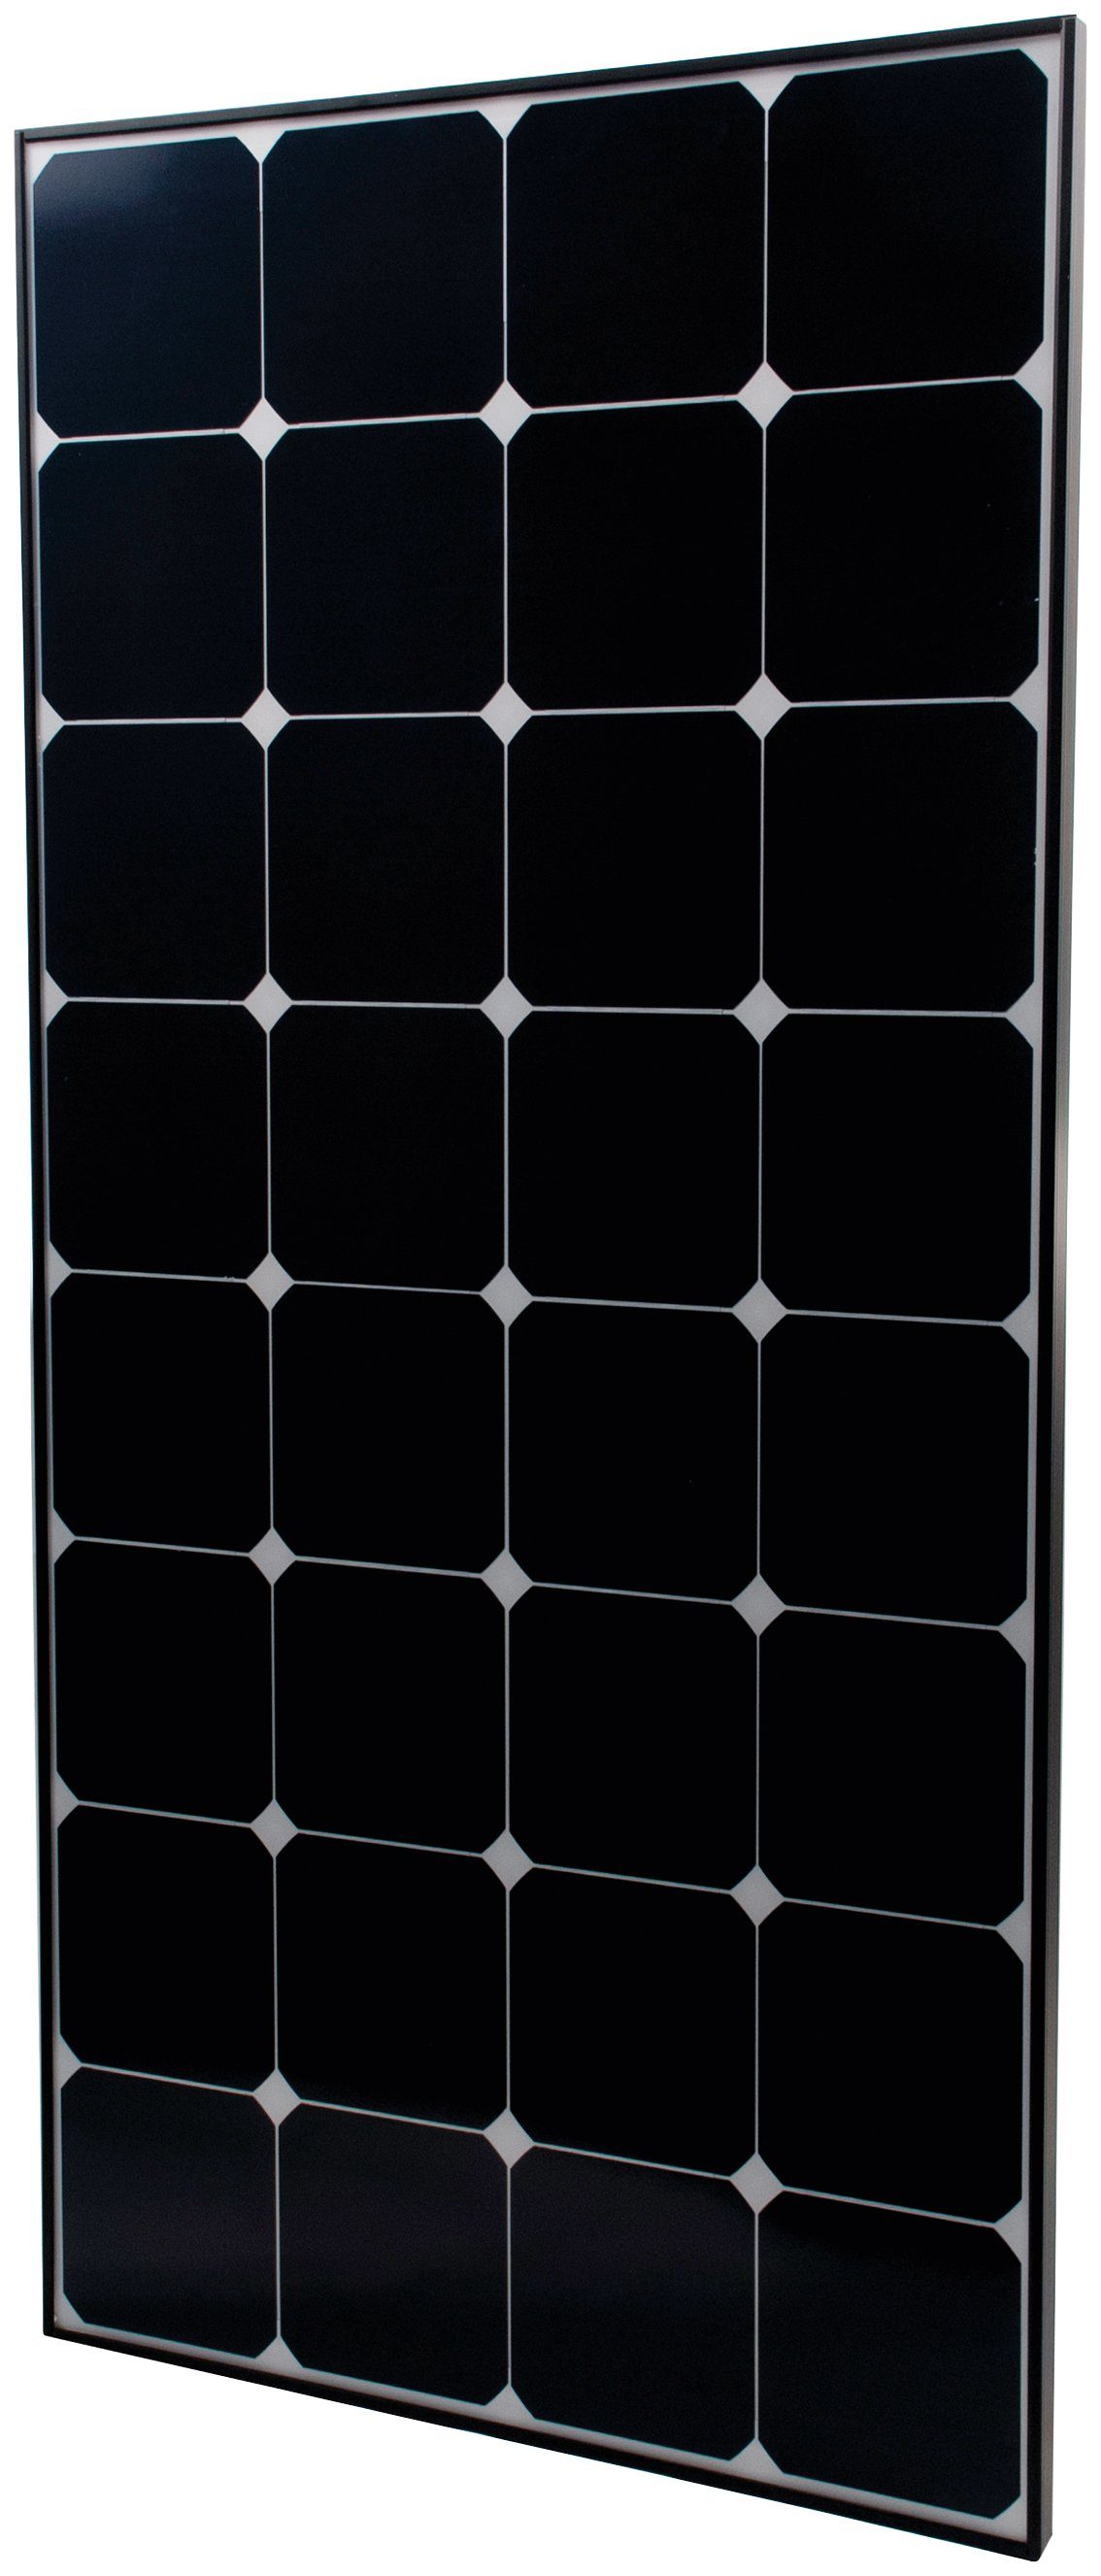 Phaesun Solarmodul Sun Peak SPR 80, 80 W, 12 VDC, IP65 Schutz | Solarmodule